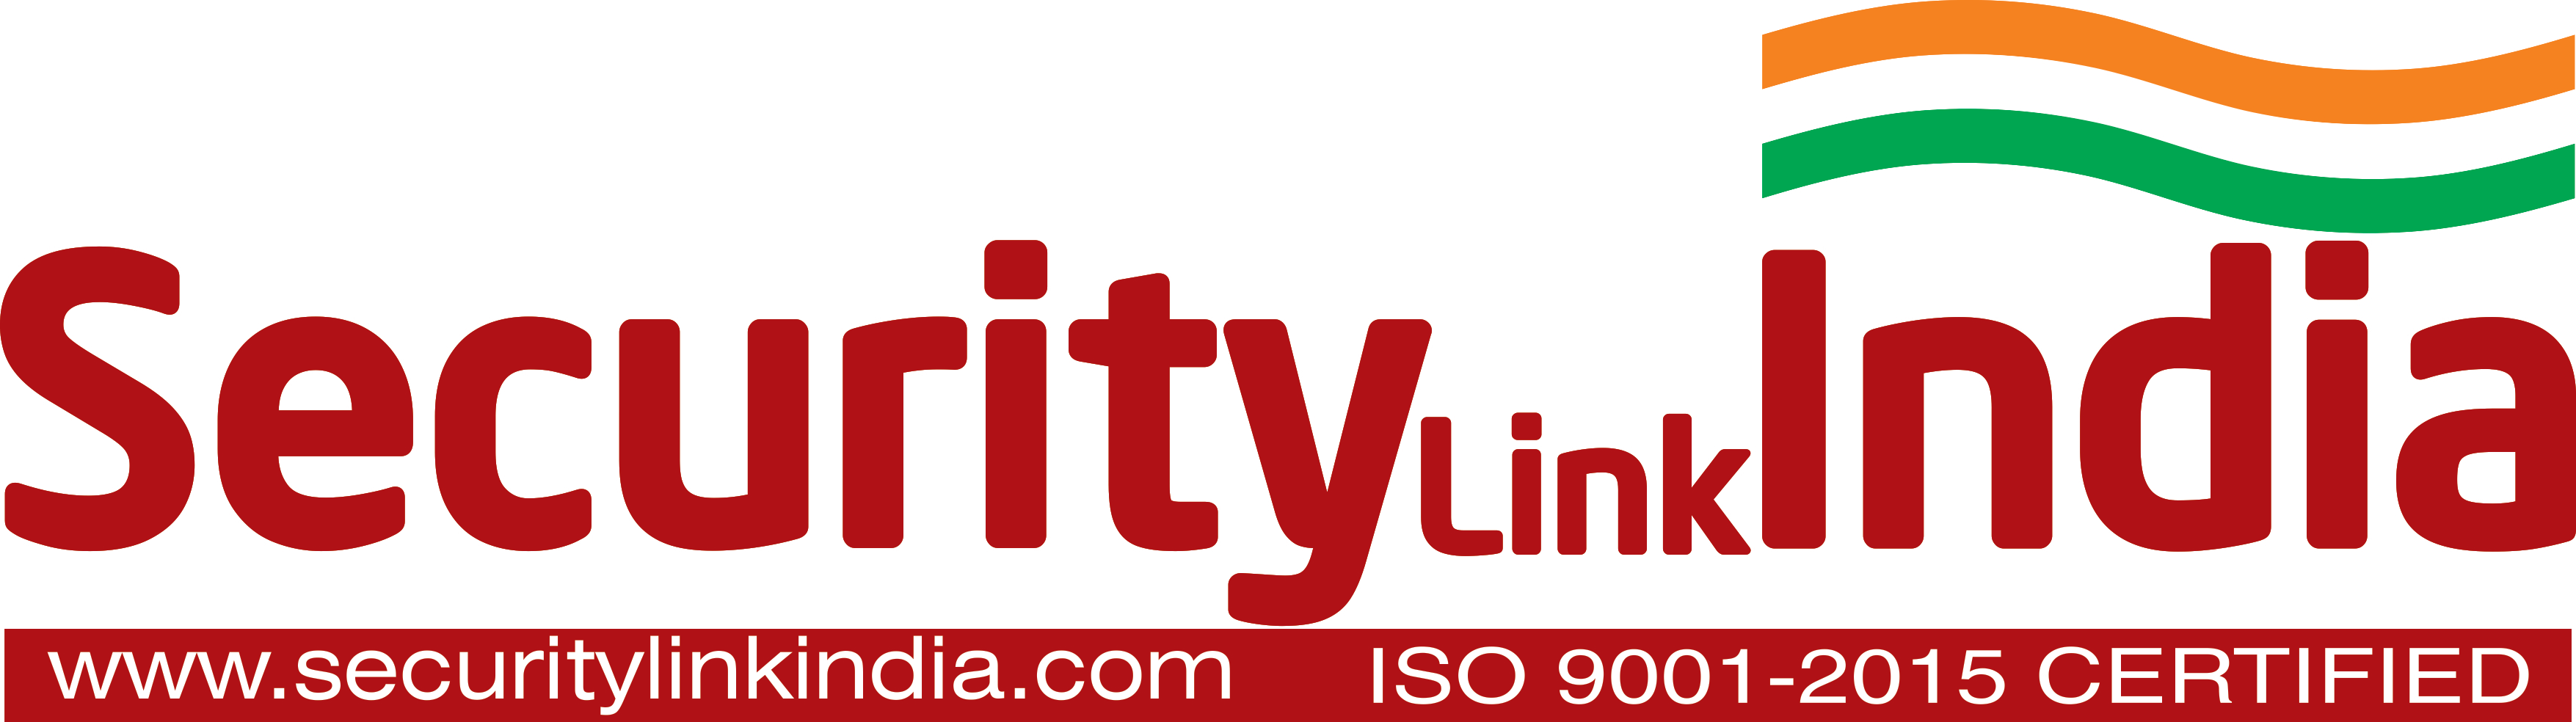 SecurityLinkIndia - Online e-Magazine